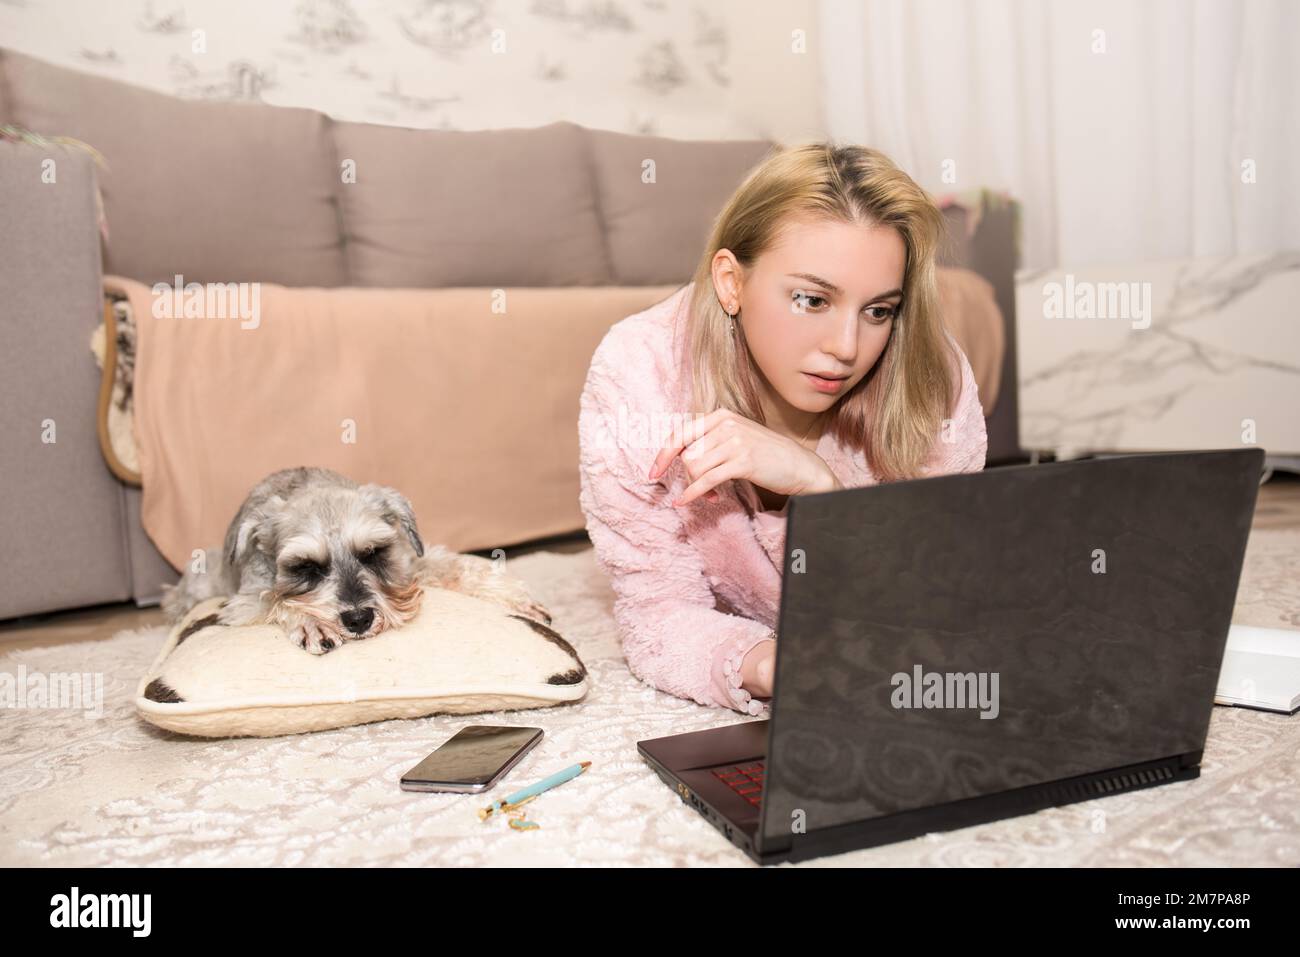 Une jeune femme blonde travaille sur un ordinateur portable, un chien gris est allongé sur la moquette à côté d'elle. Banque D'Images